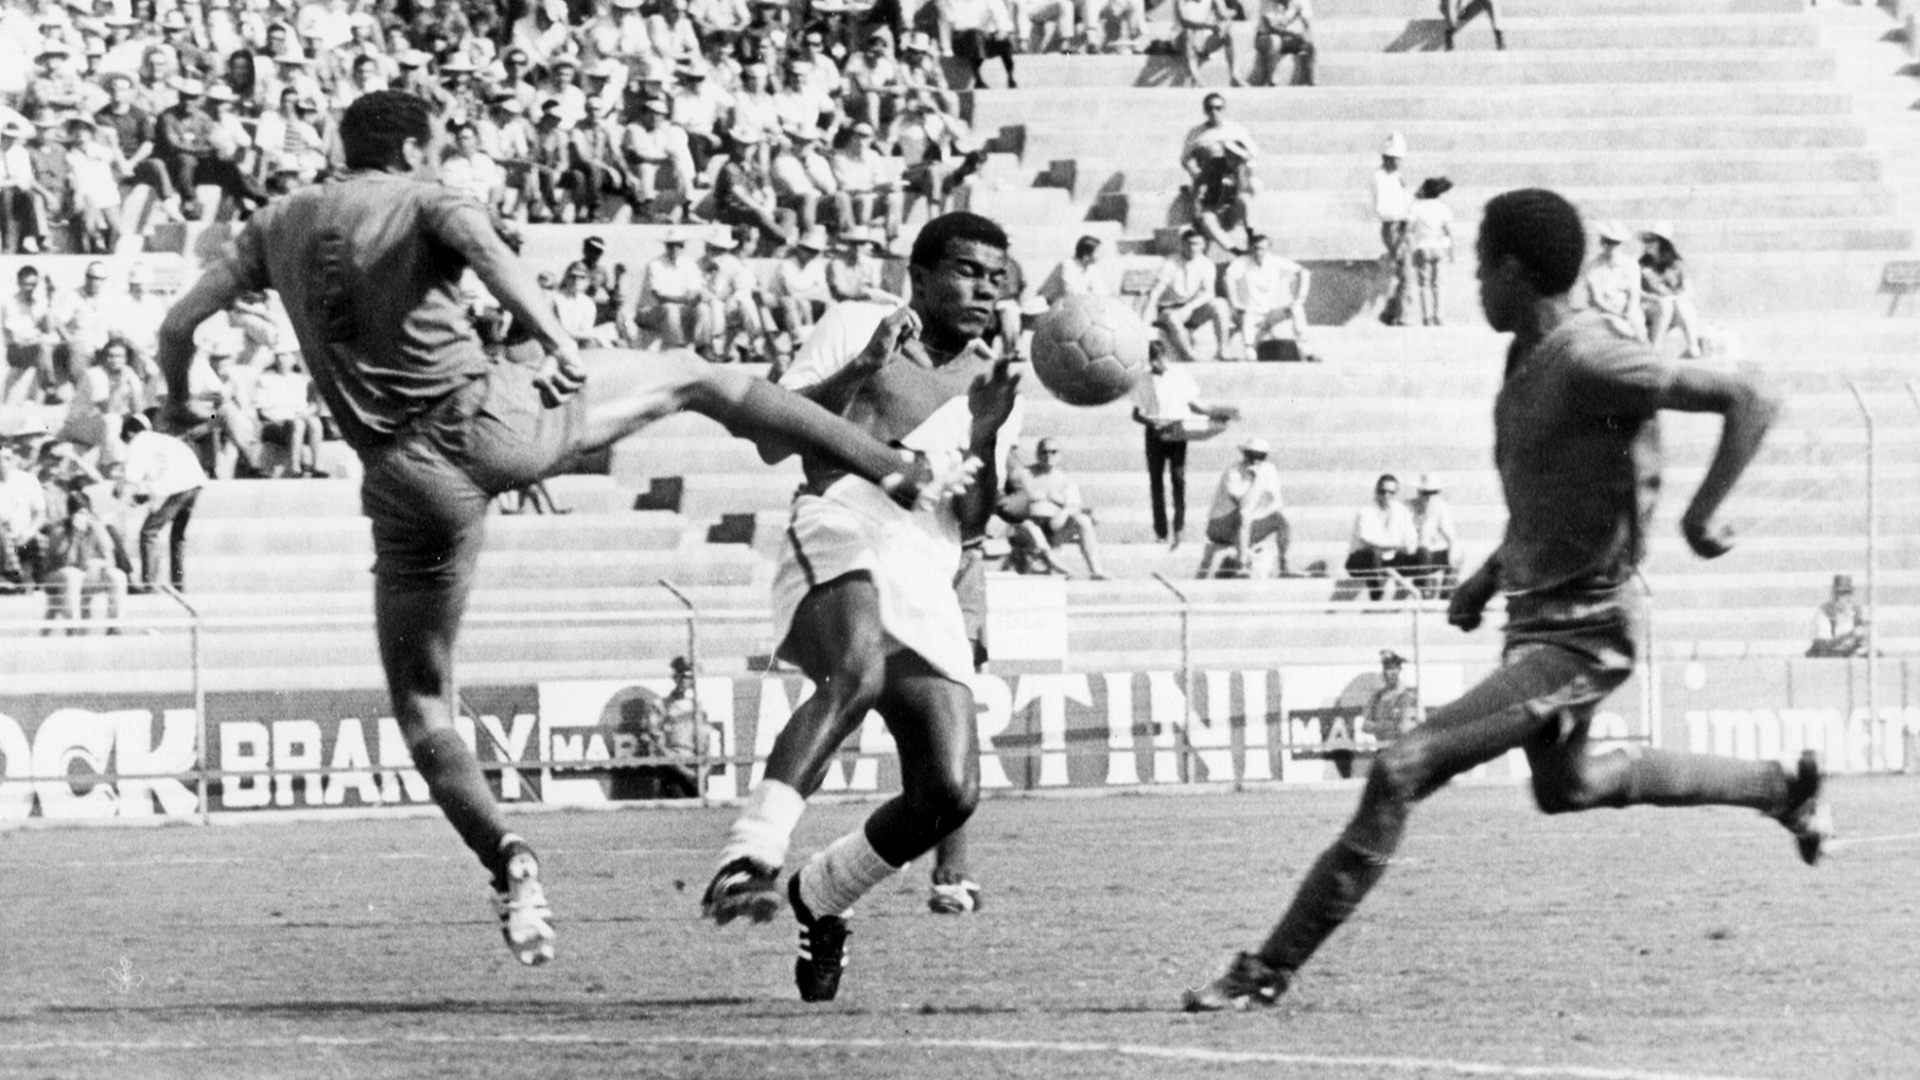 teofilo-cubillas-peru-morocco-world-cup-1974_bs0glk549wgj1gxrigy1phc9n.jpg